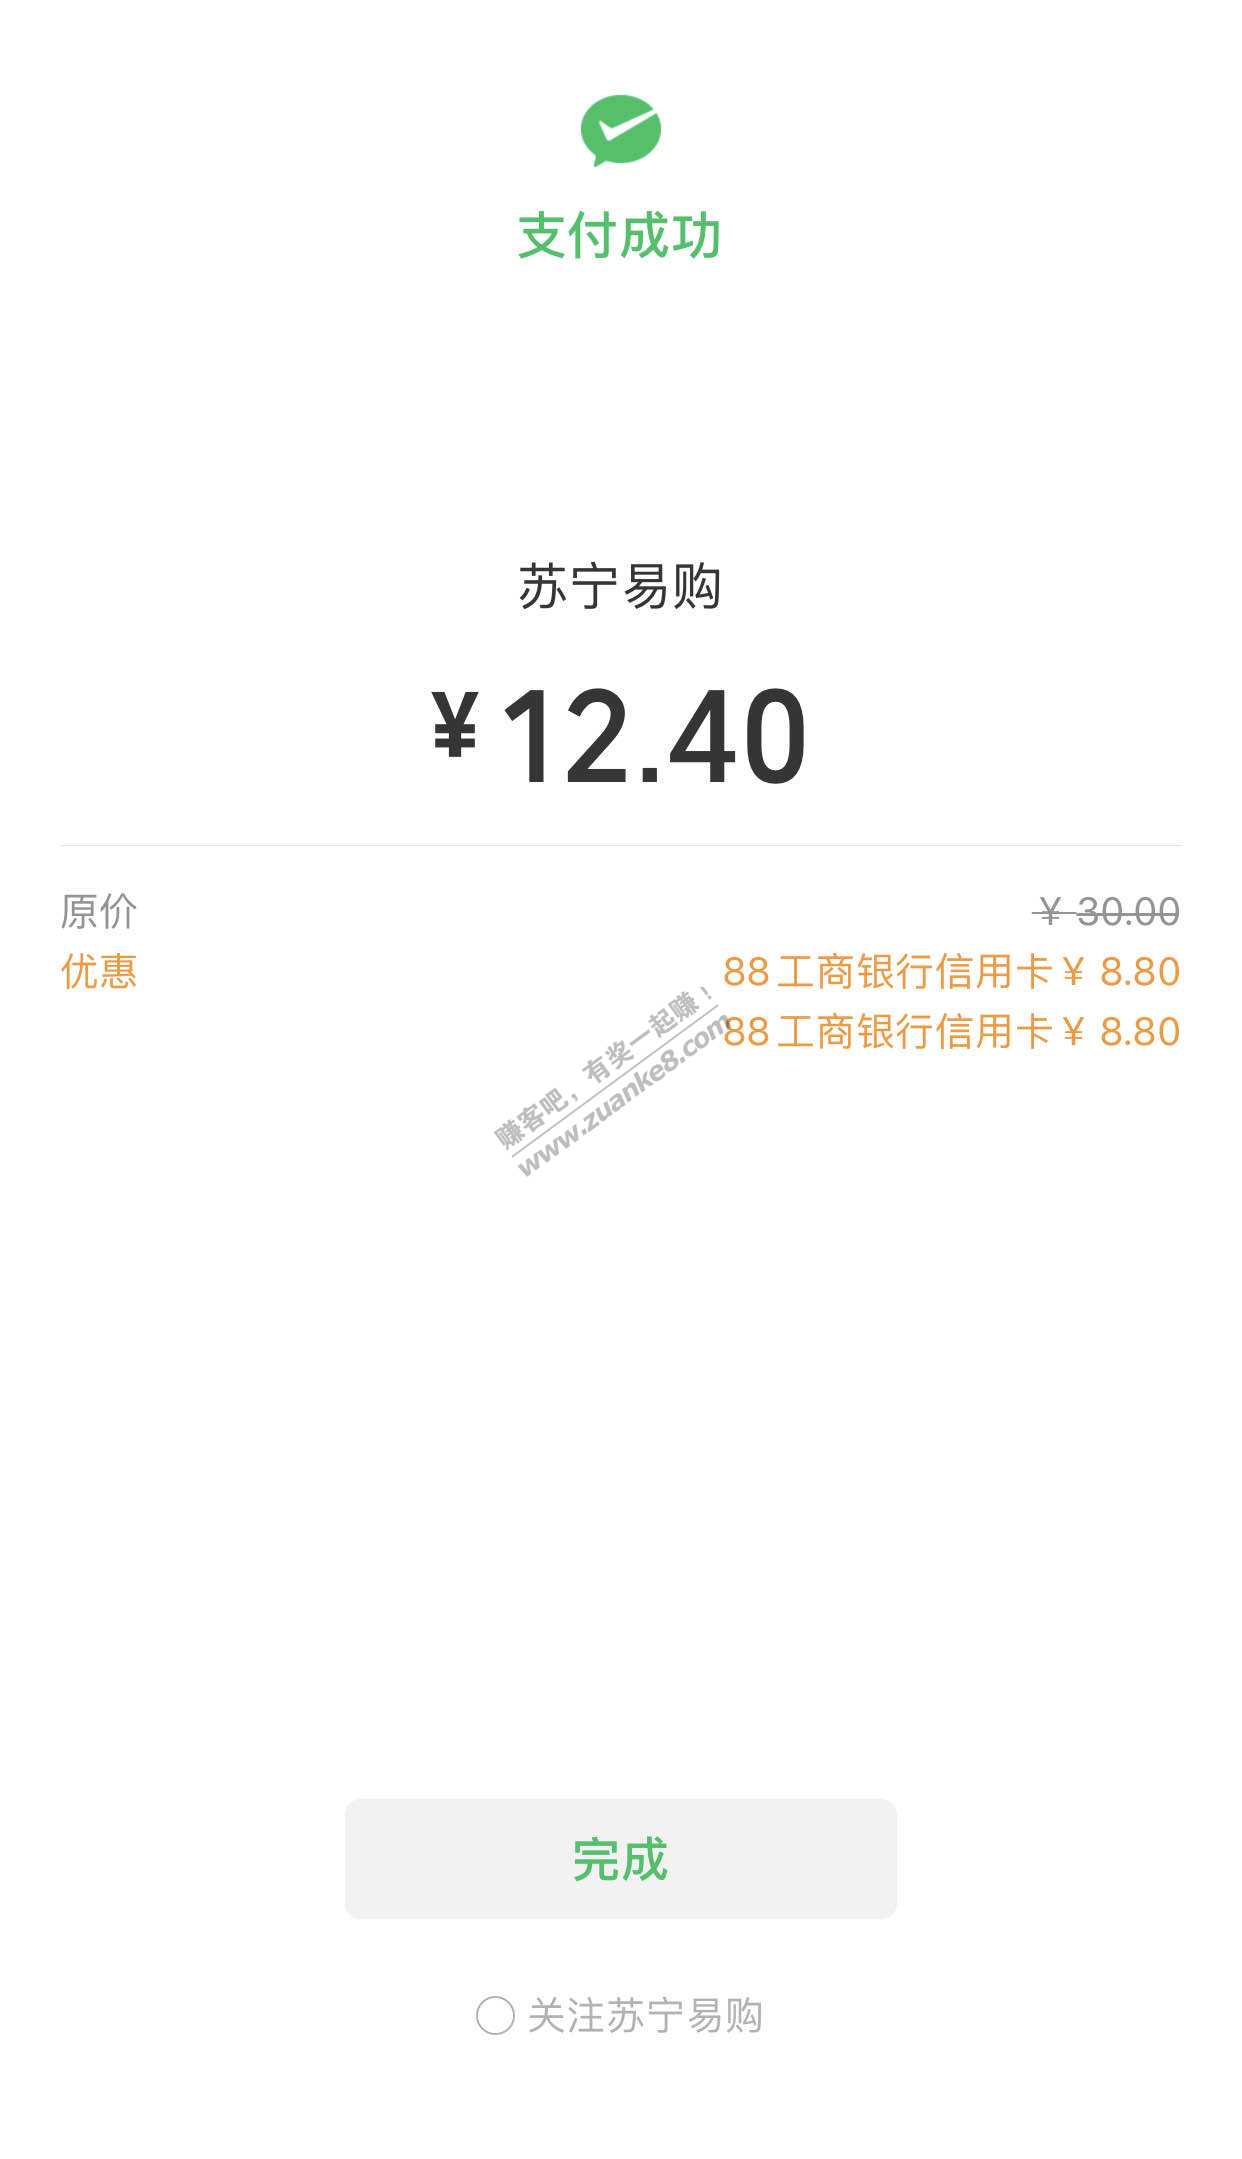 工行-浦发-平安微信8.8元立减金tx方法-惠小助(52huixz.com)